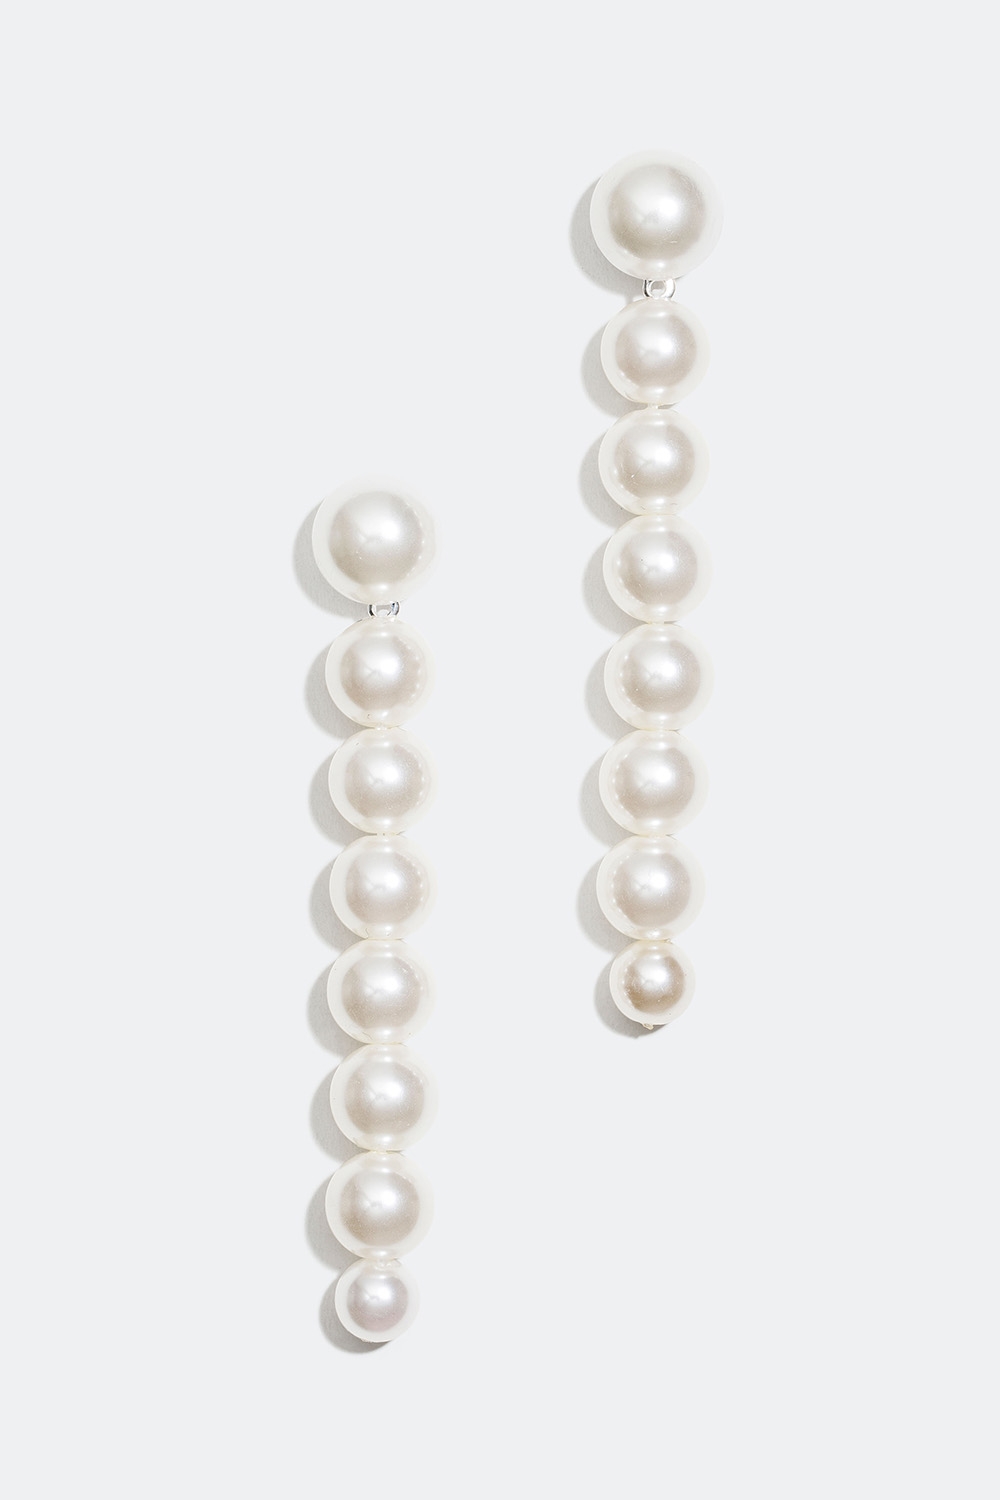 Pitkät korvakorut, joissa valkoisia helmiä ryhmässä Korut / Korvakorut @ Glitter (253004583001)